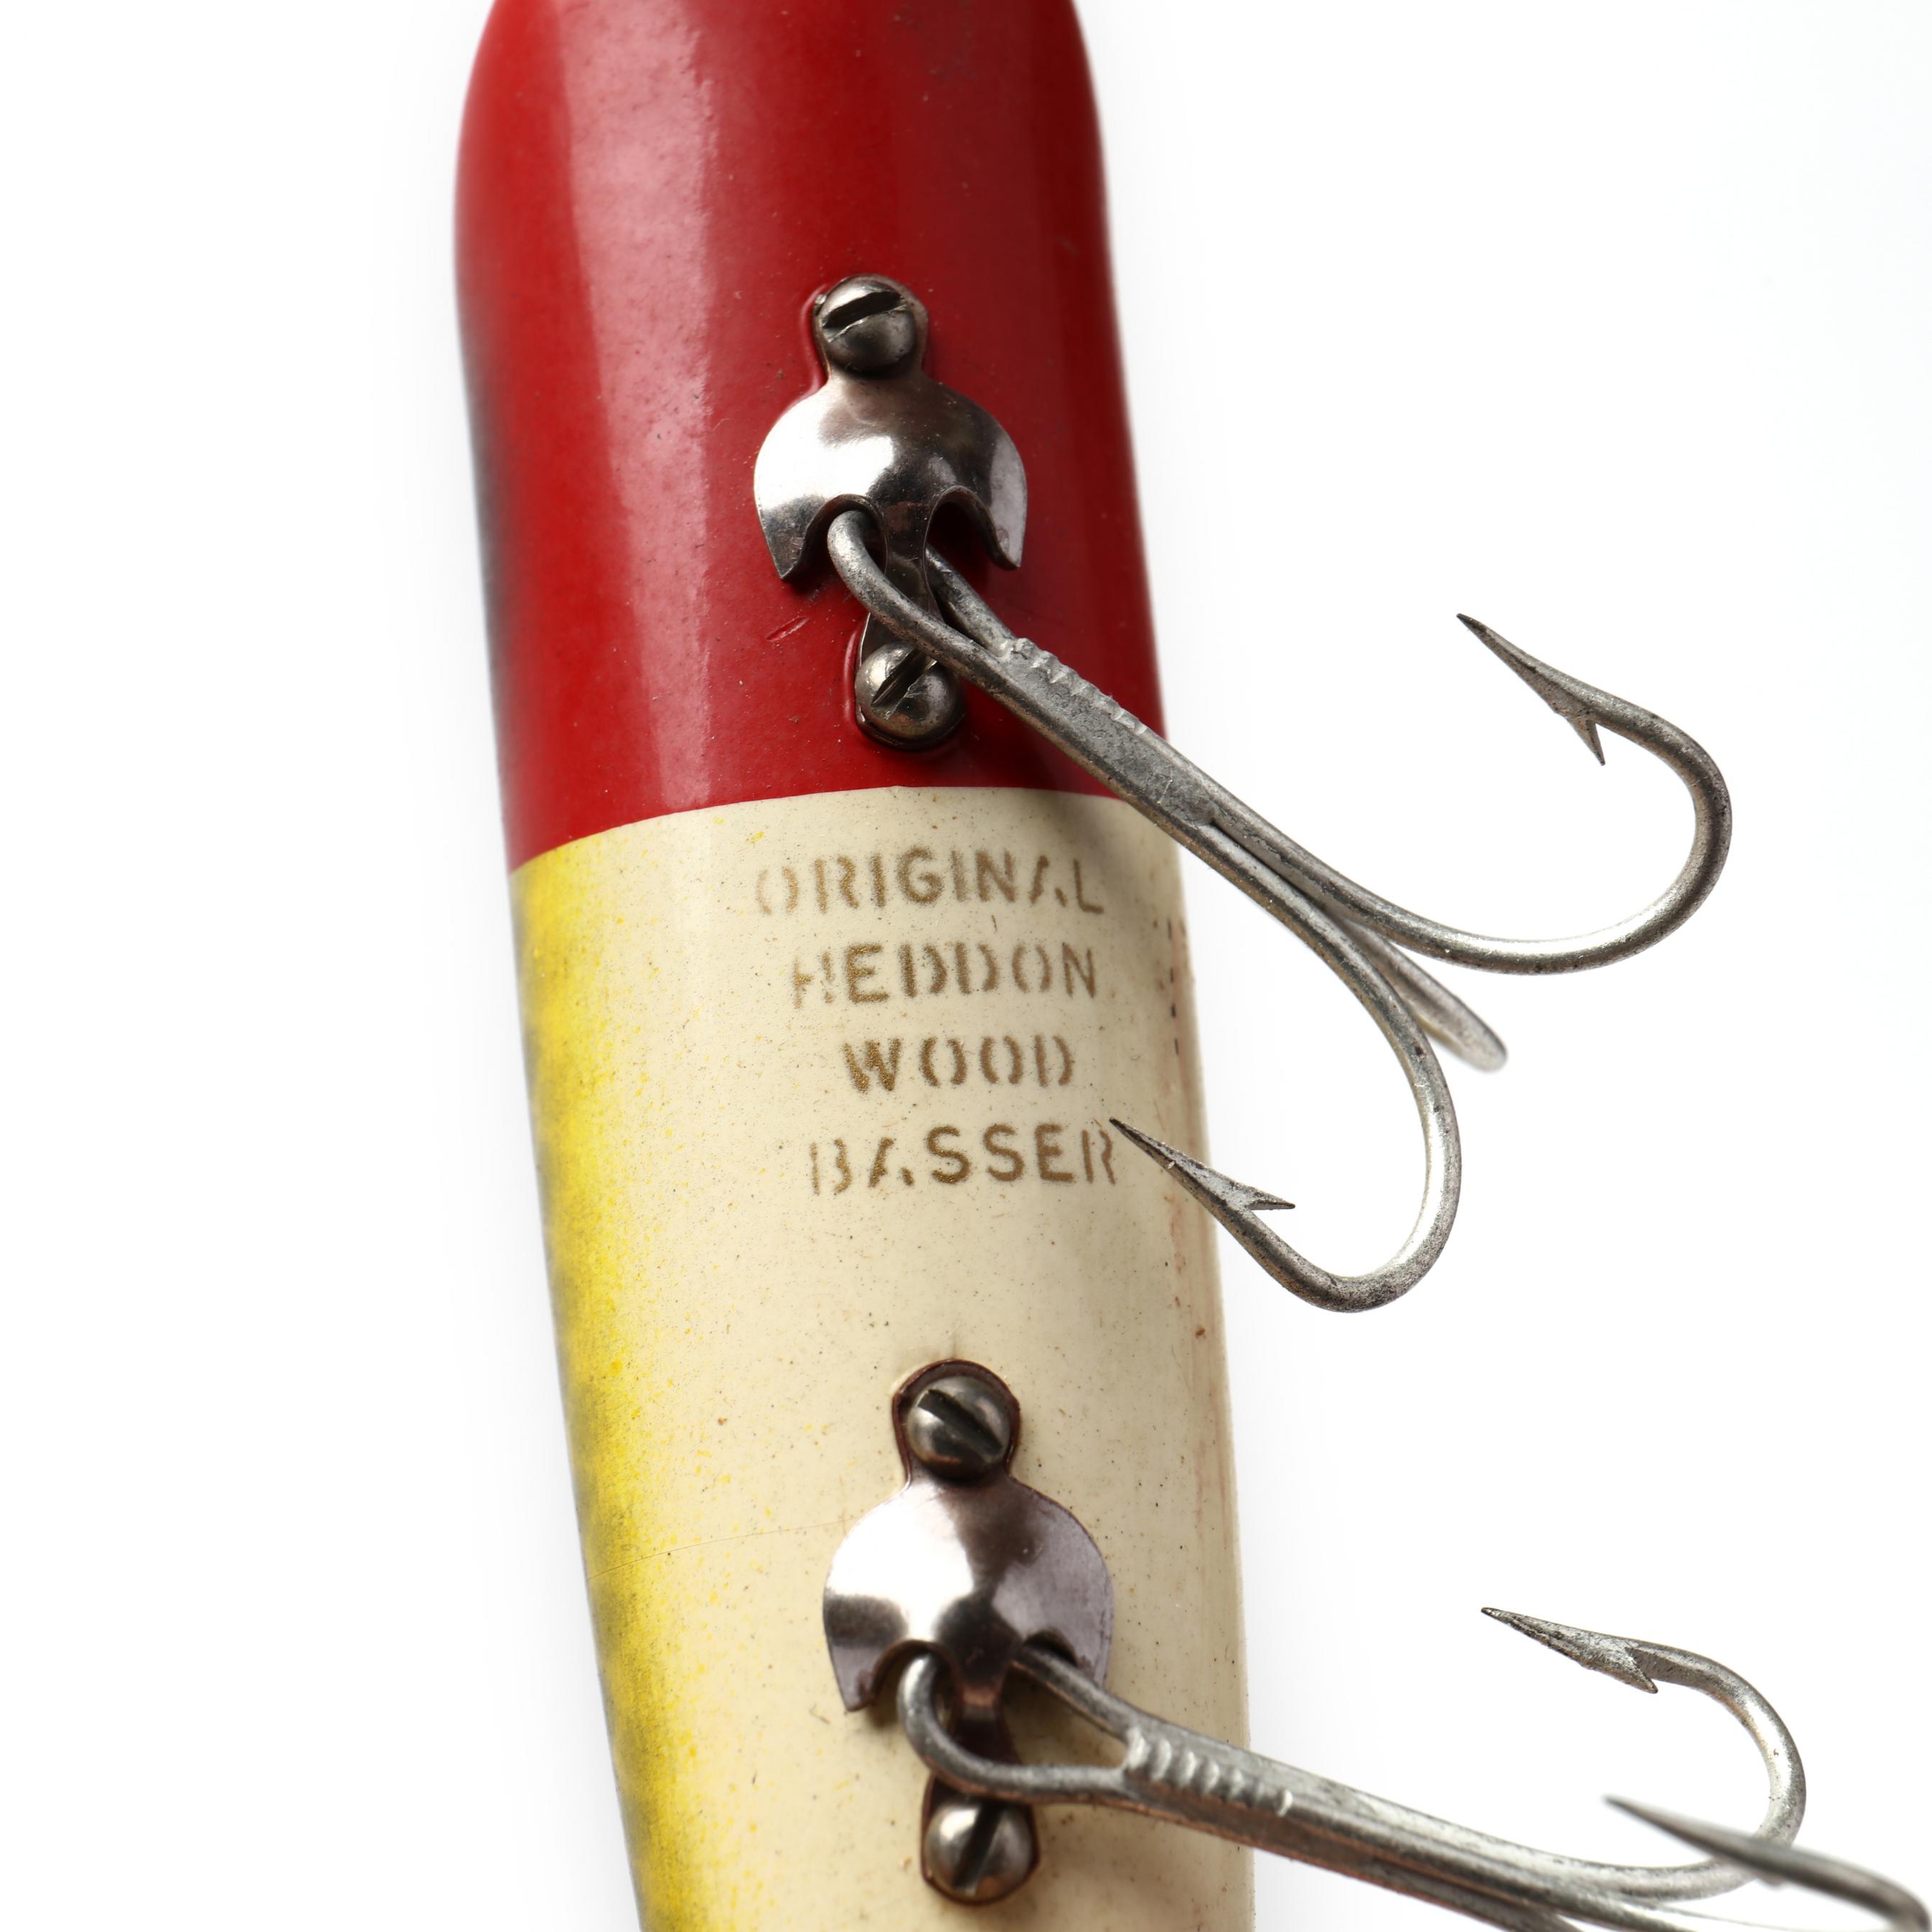 OLD ANTIQUE HEDDON WOOD BASSER FISHING LURE MODEL #8509 J ORIGINAL